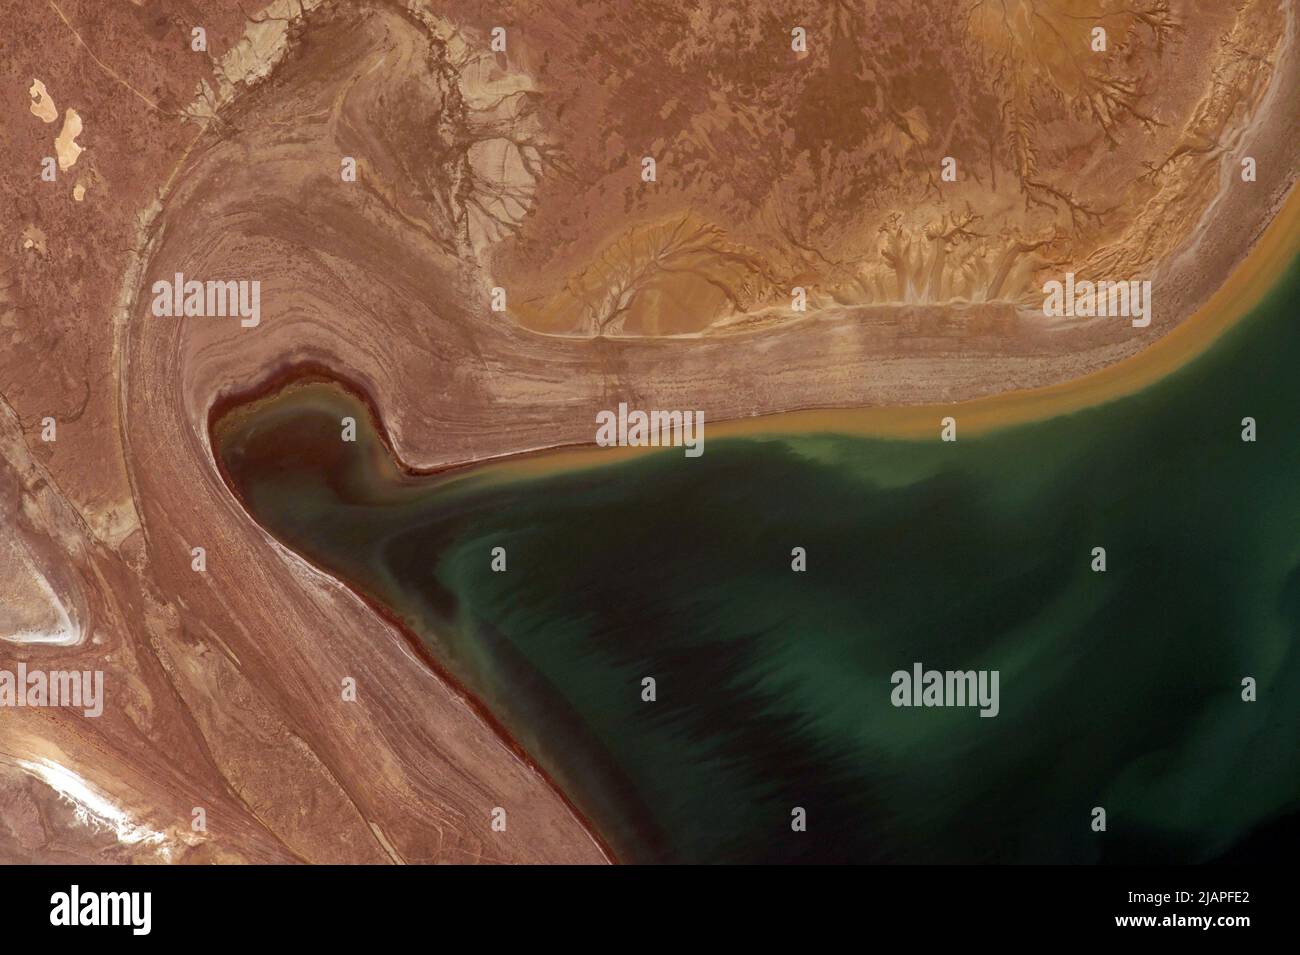 La terre d'en haut: Détail de la mer d'Aral prise de la Station spatiale internationale montrant les niveaux d'eau en baisse. Kazakhstan, Asie centrale une version optimisée et numériquement améliorée d'une image / crédit NASA Banque D'Images